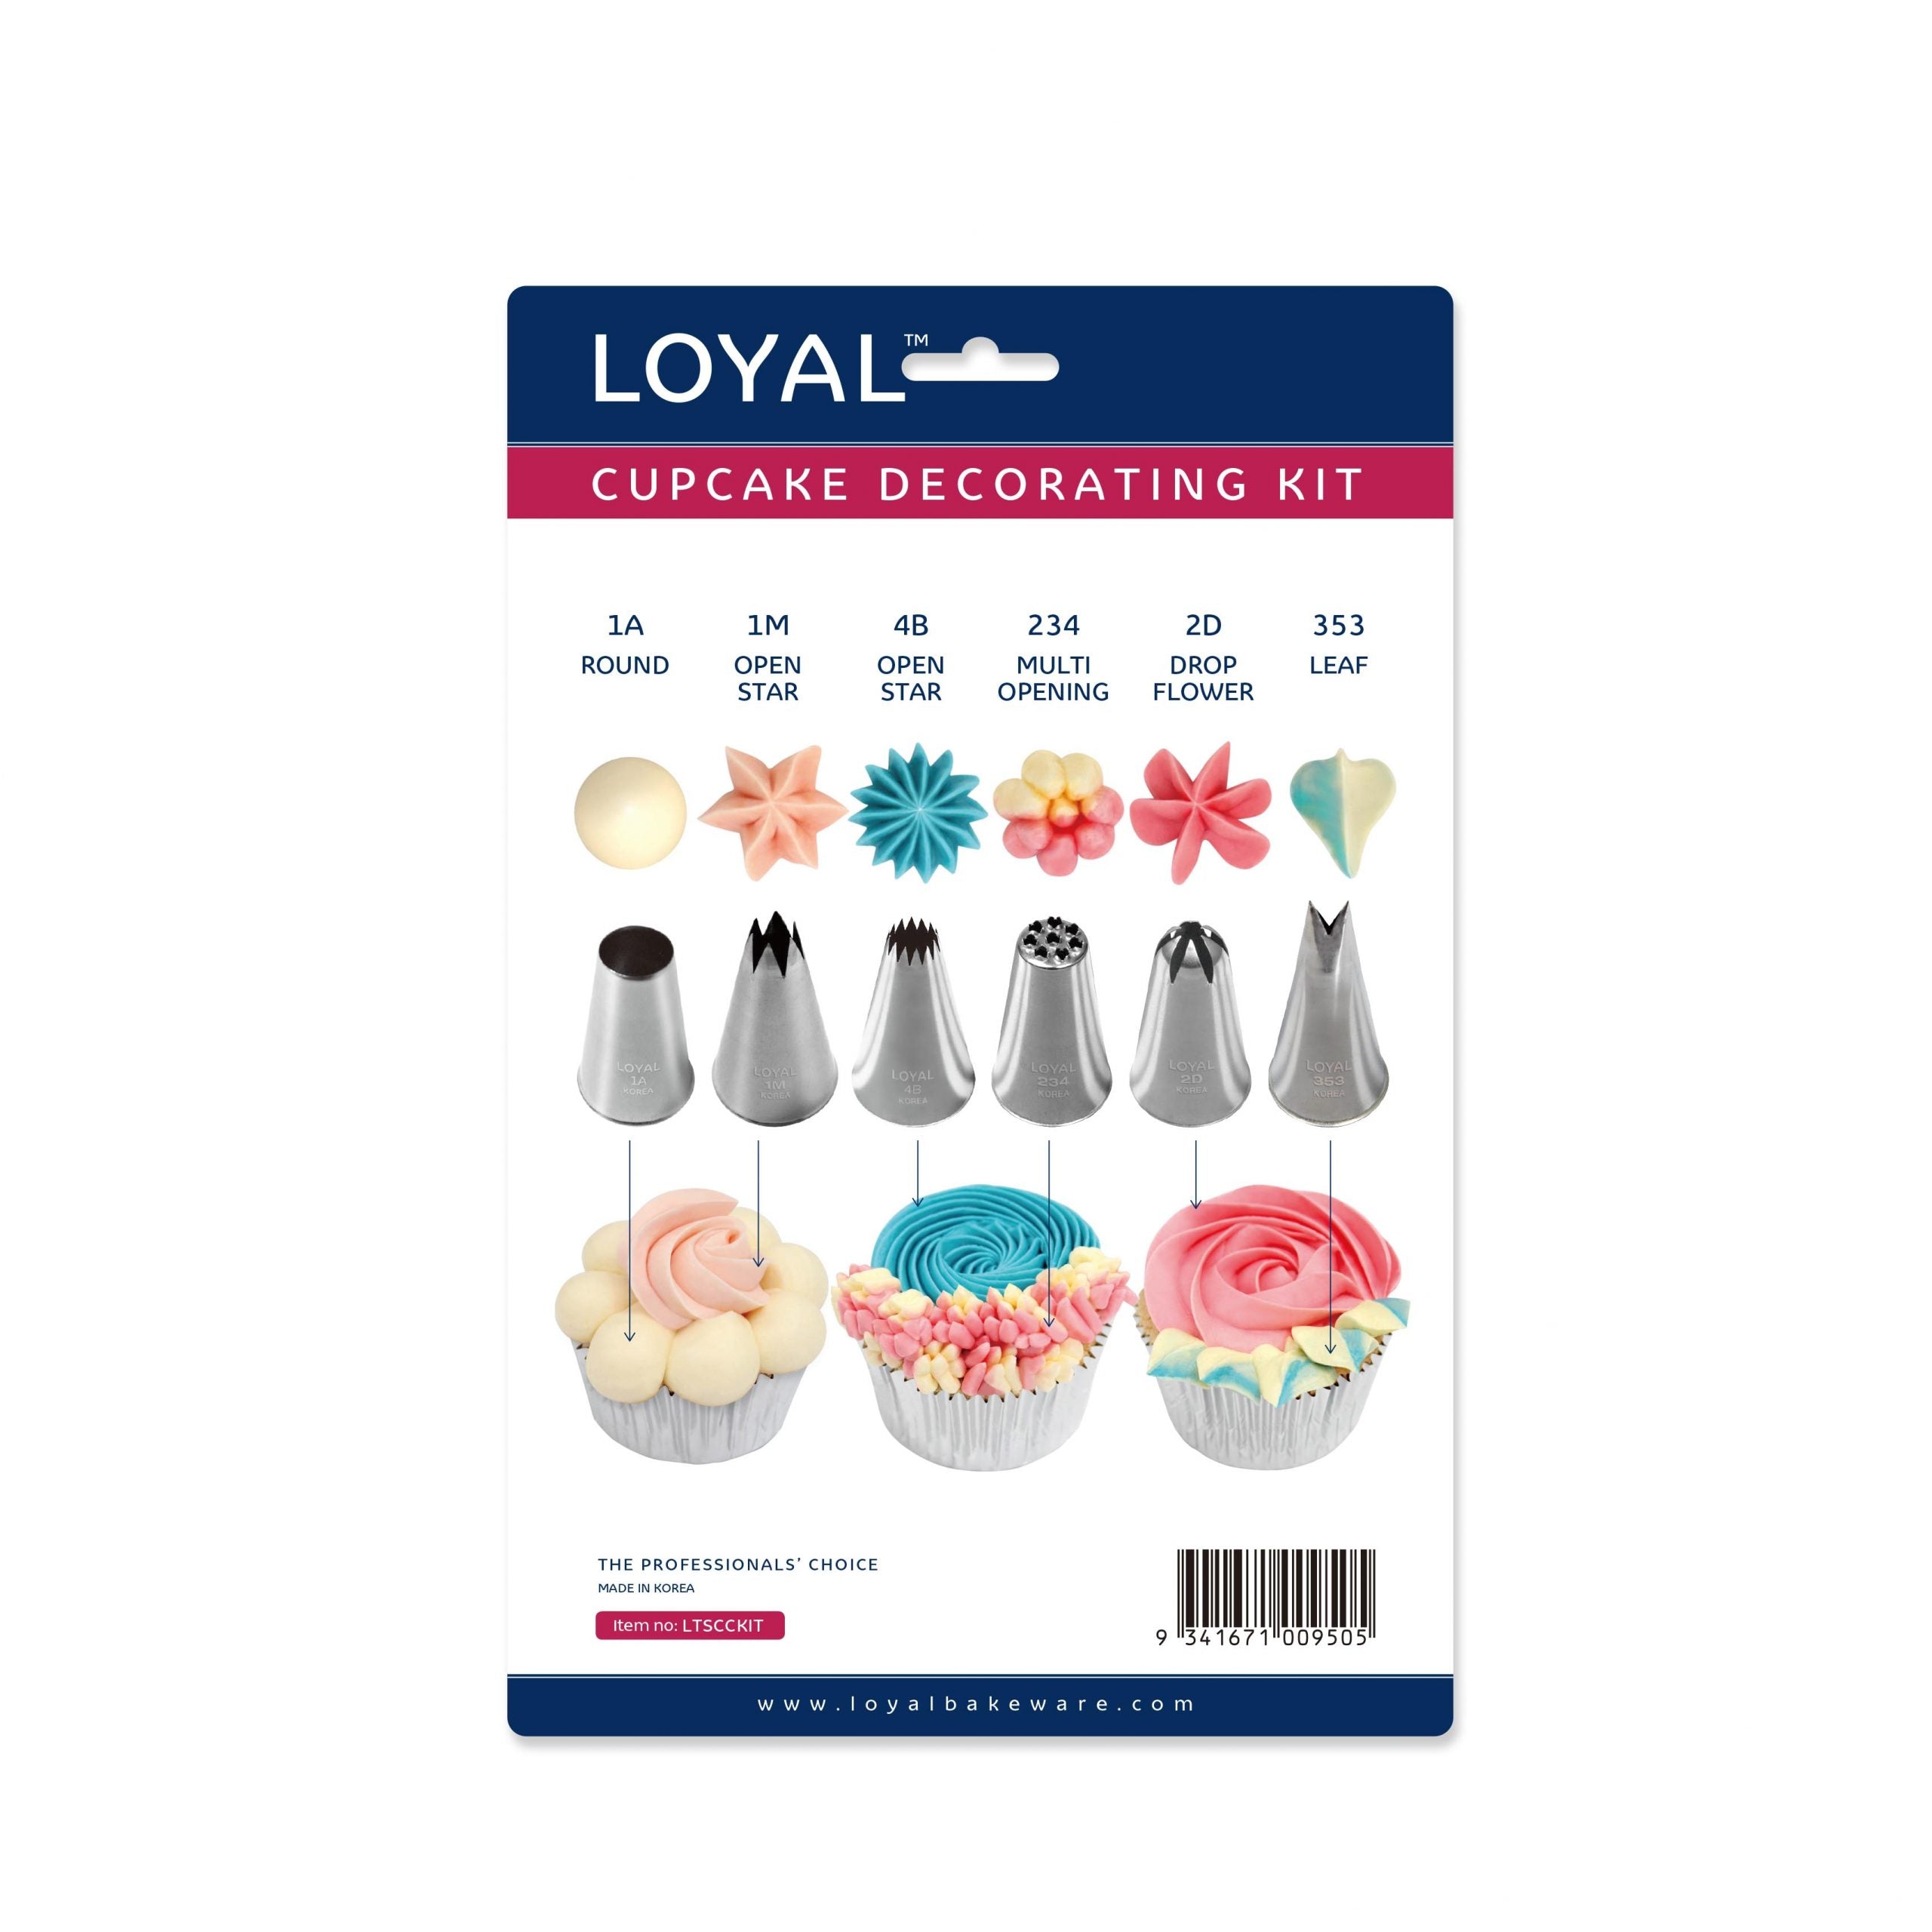 Loyal Cupcake Decorating Kit - 8 Piece Set